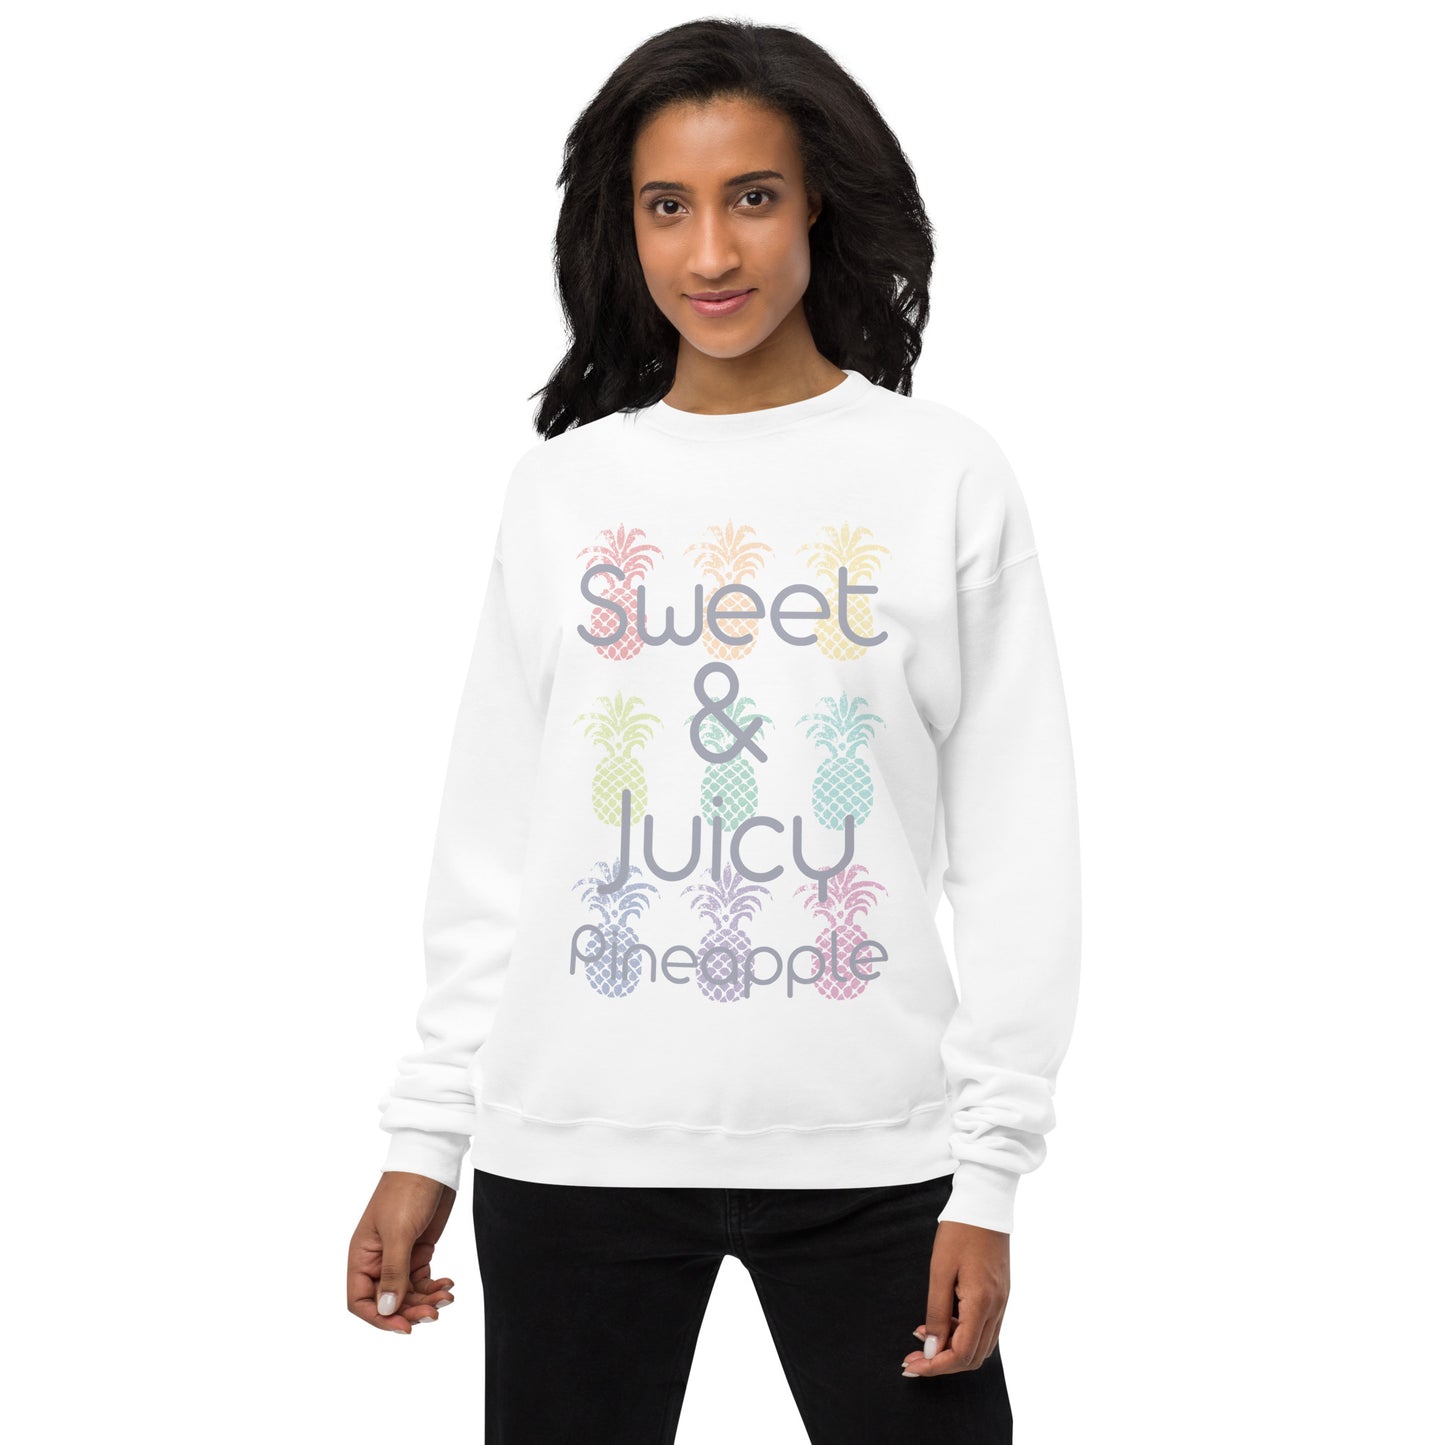 Sweet & Juicy Unisex Fleece Sweatshirt